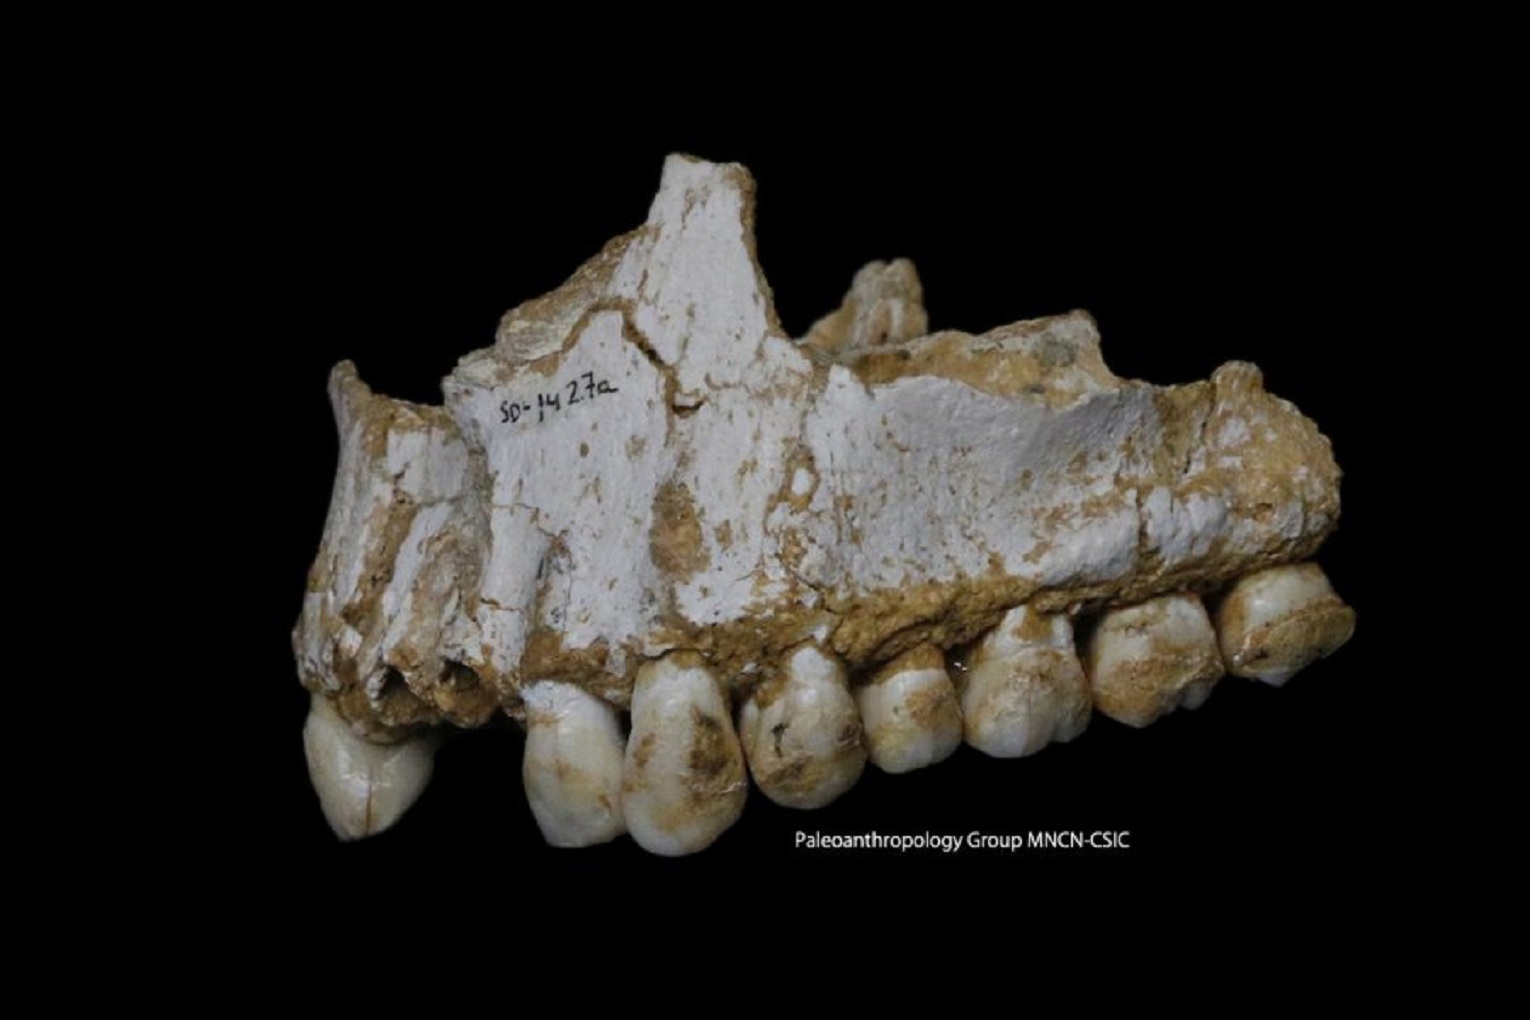 Mandíbula neandertal hallada en El Sidrón. En el molar trasero derecho se puede apreciar un depósito de cálculo dental que revela que este individuo consumía álamo y el hongo Penicillium, fuente de un antibiótico natural. Fuente: Paleoanthropology Group MNCN-CSIC.